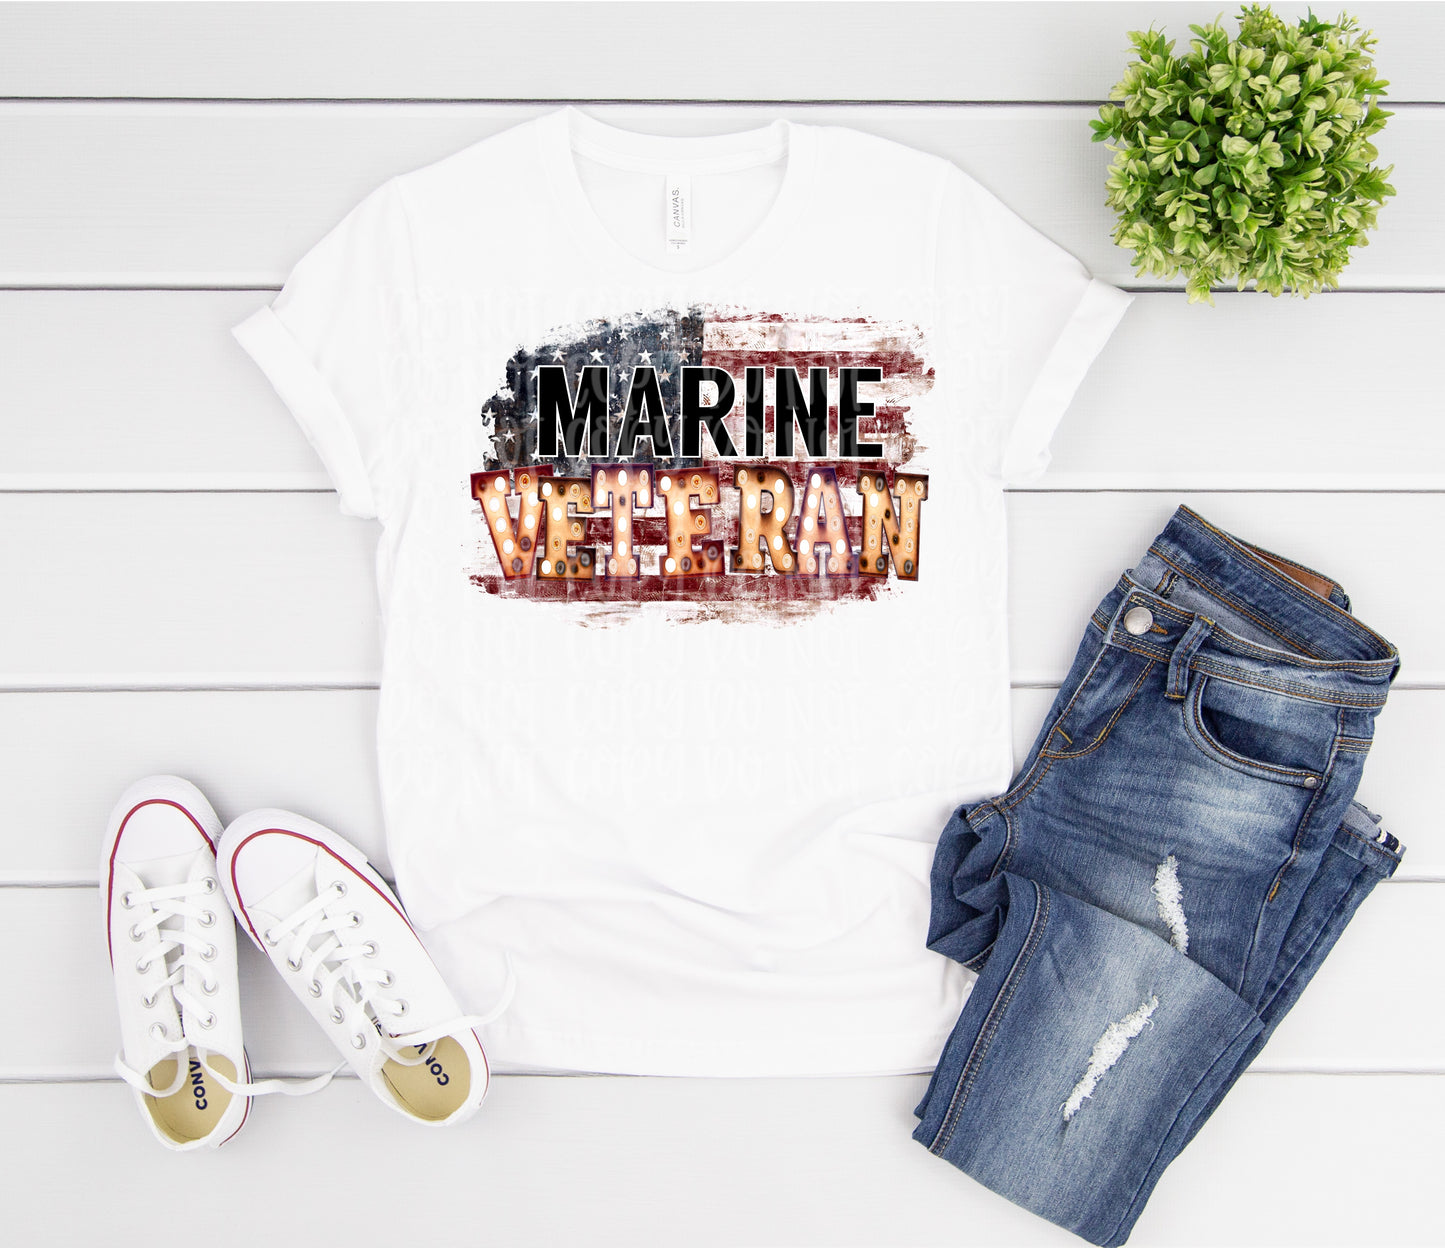 Marine Veteran marquee -plain